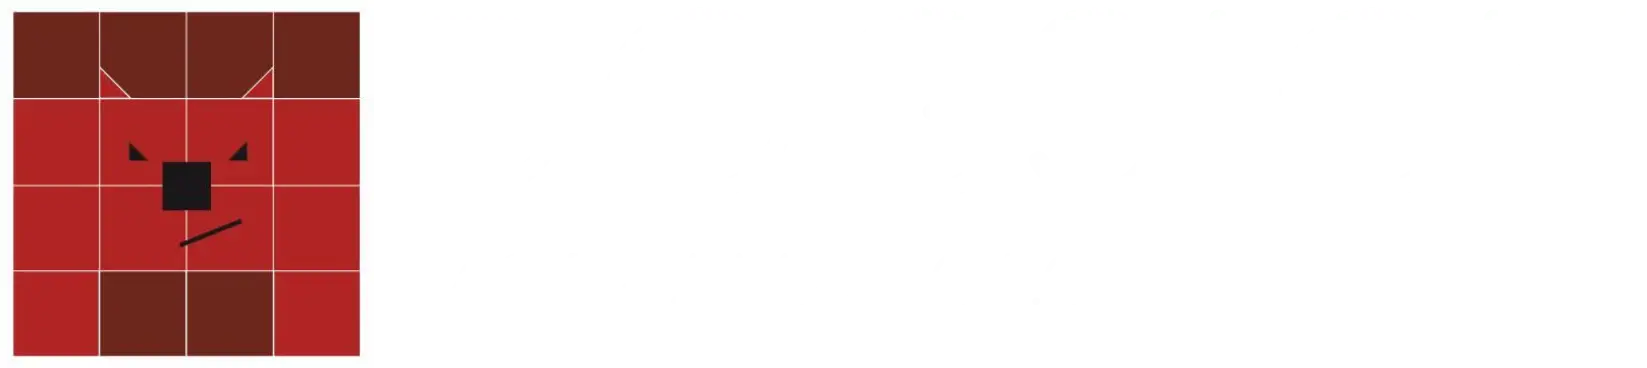 logo h dogsign